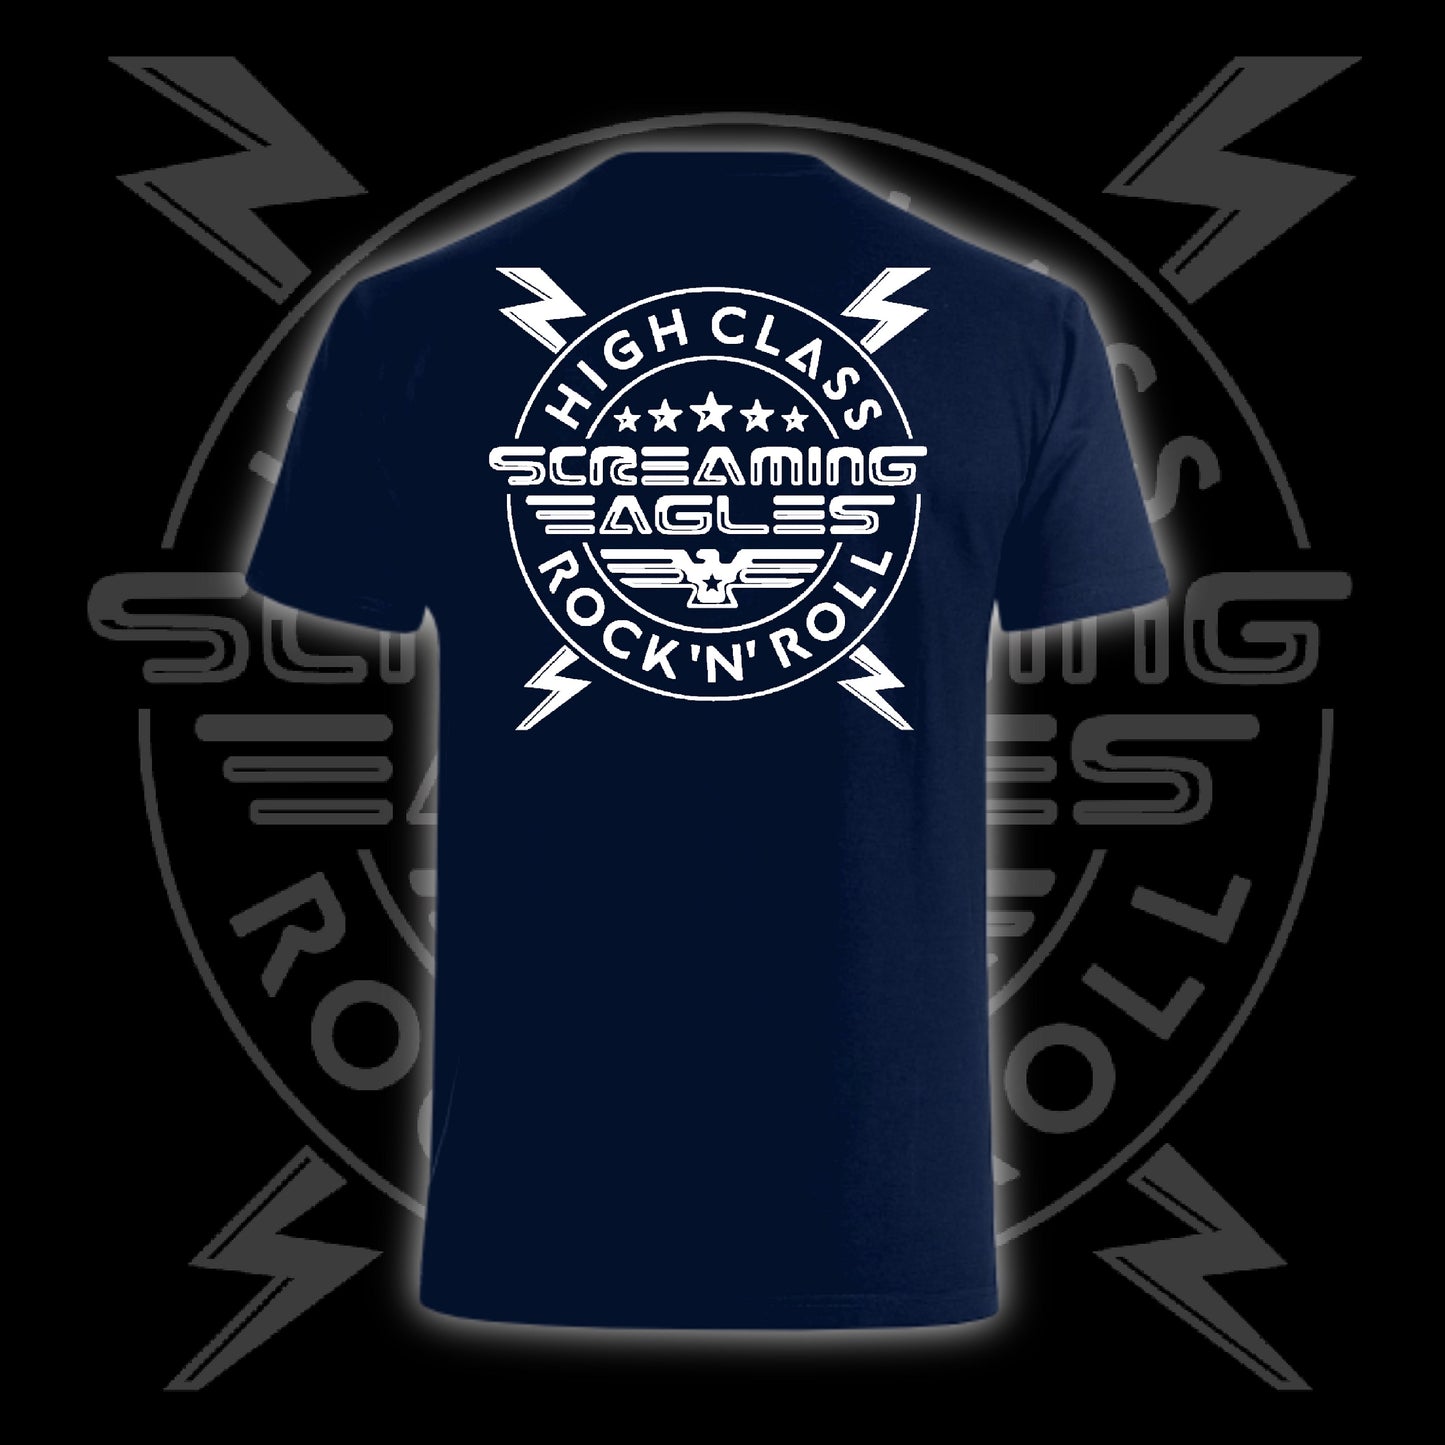 "High Class Rock 'N' Roll" T -Shirt (Option 2)